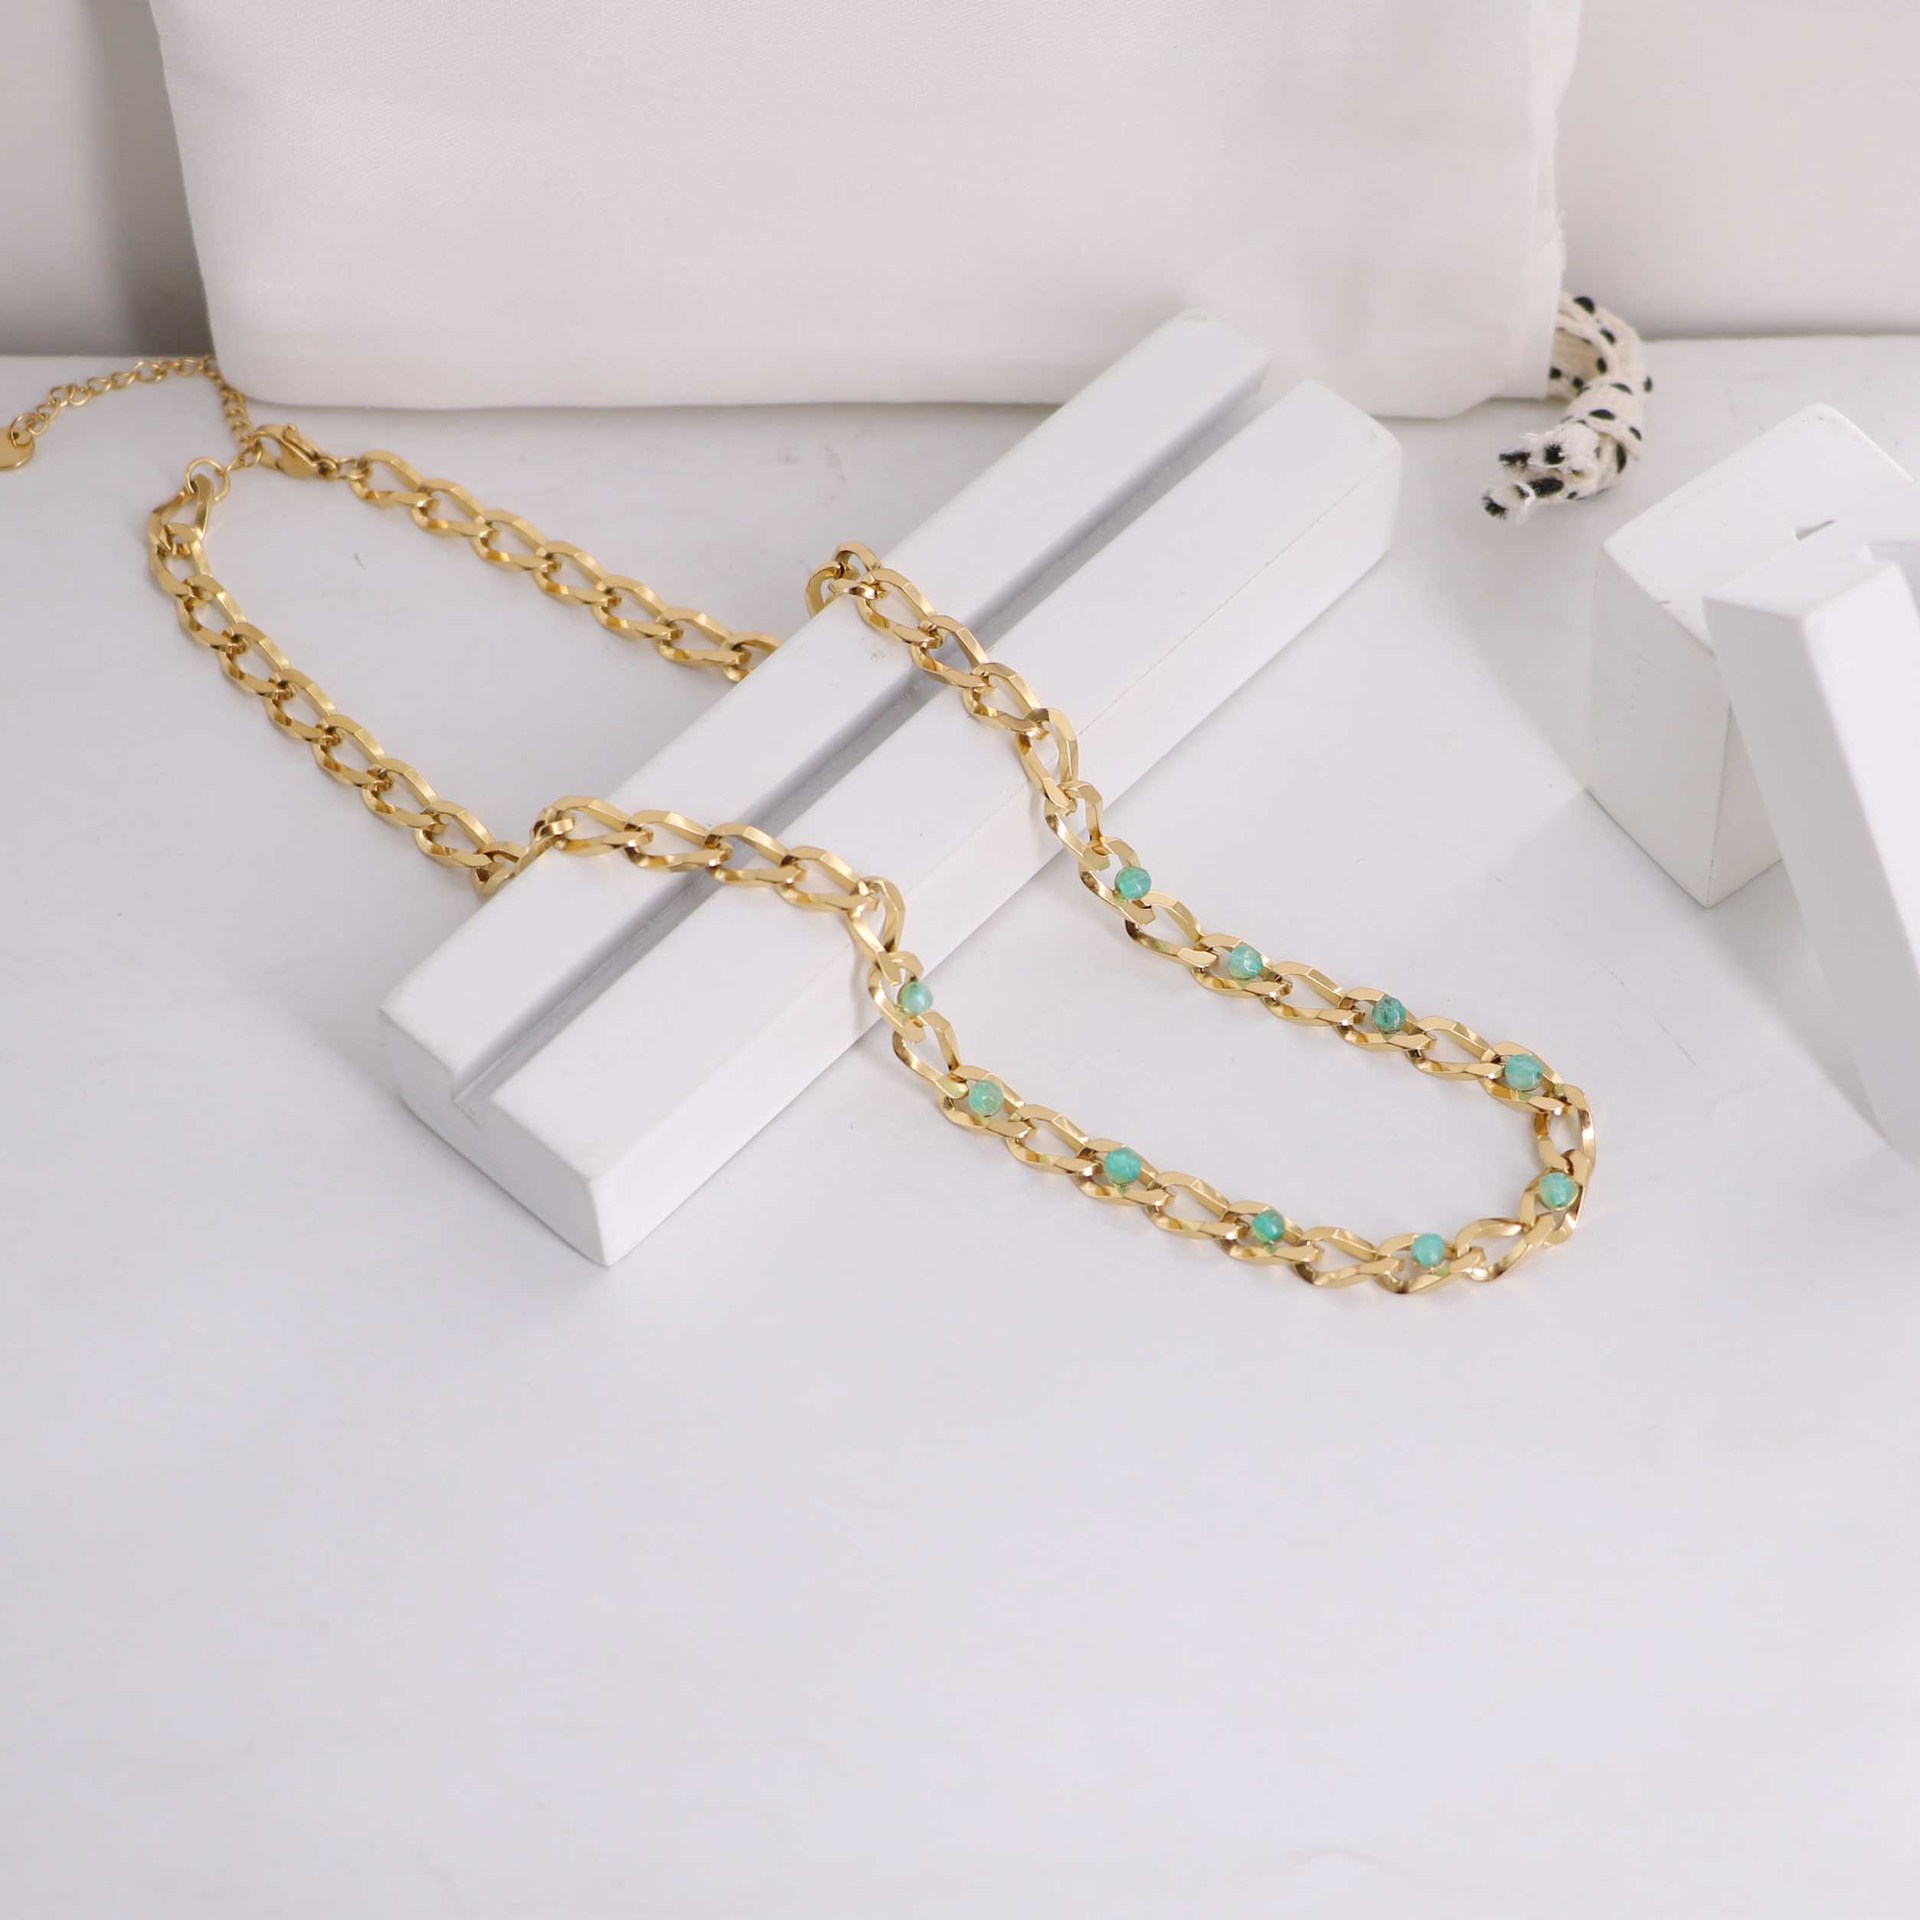 1:Necklace -40x5cm